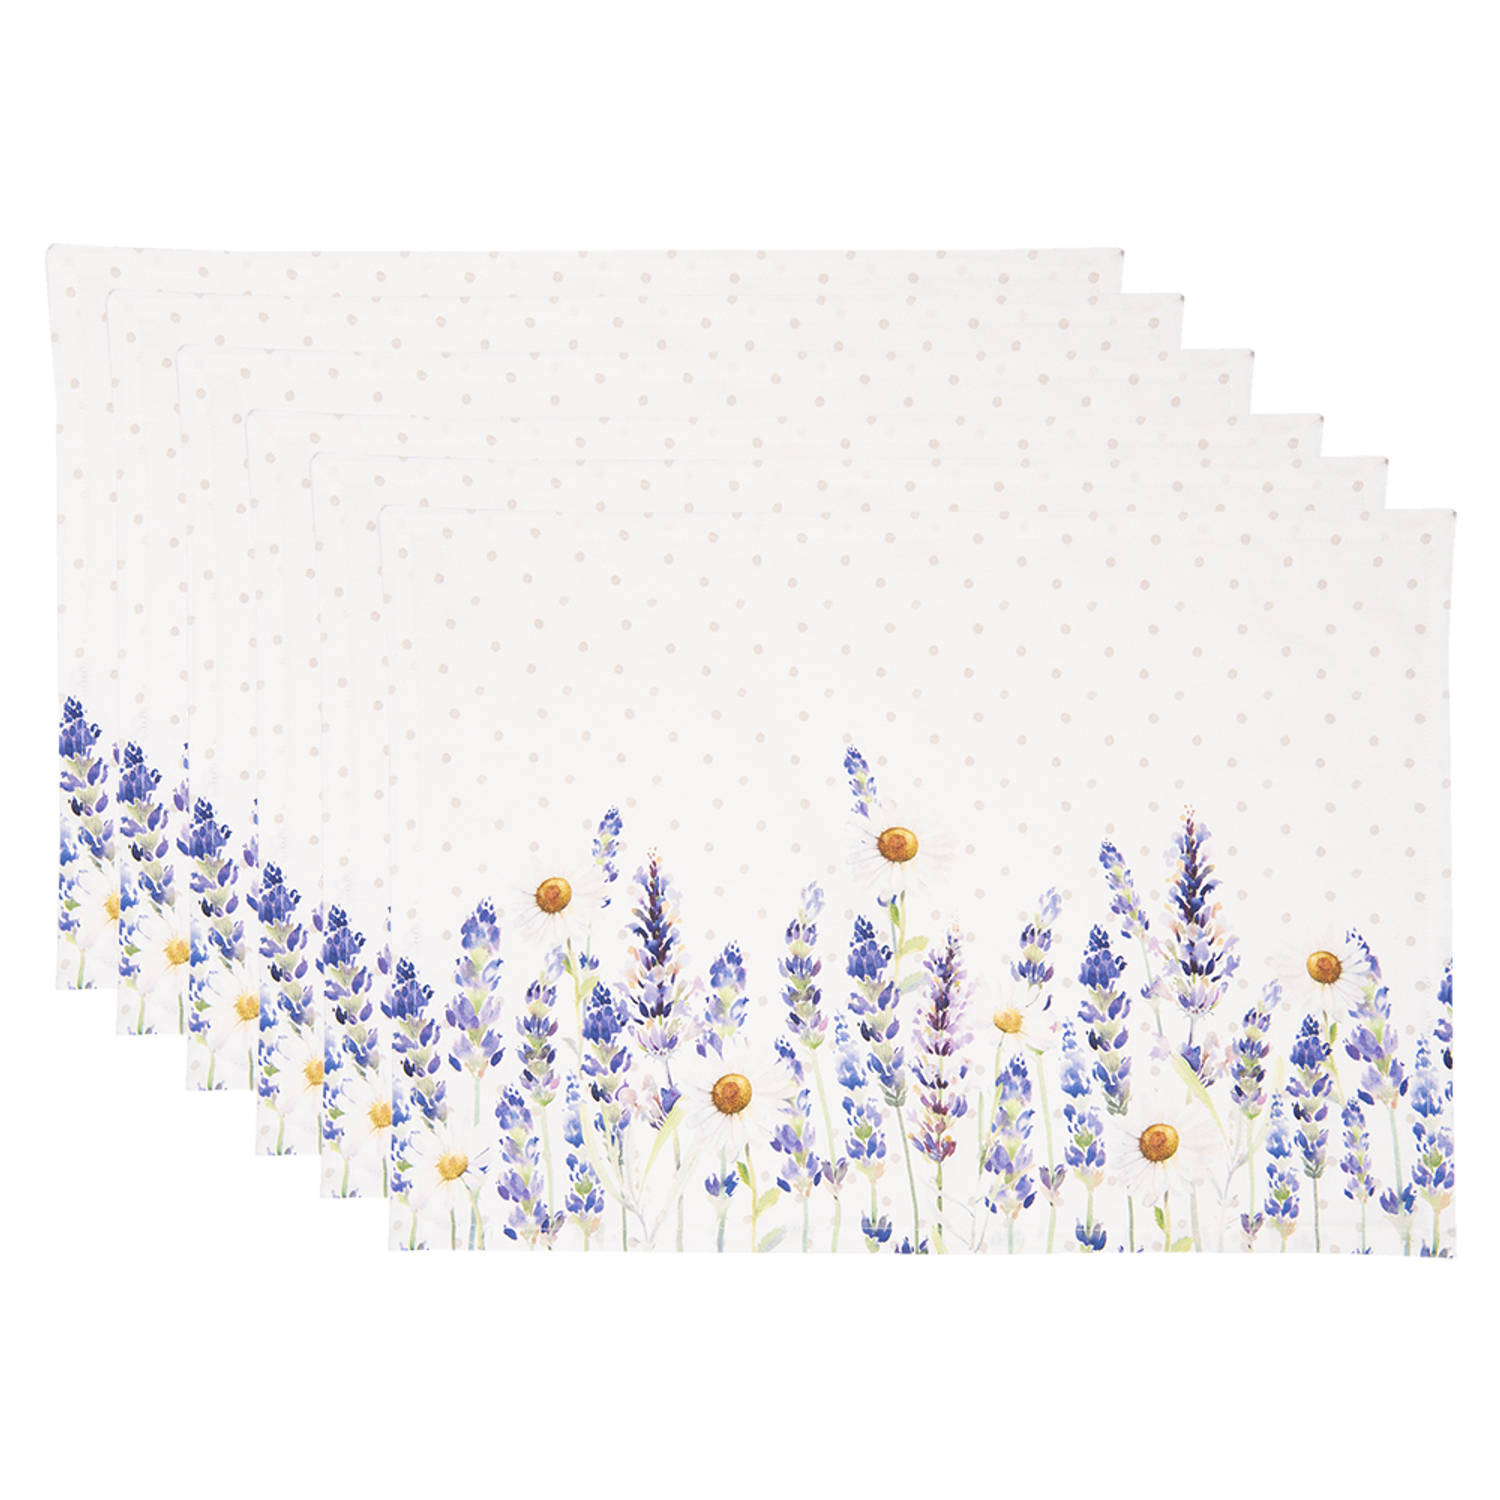 HAES DECO - Set van 6 Placemats - formaat 48x33 cm - kleuren Wit / Paars / Geel - van 100% Katoen - Collectie: Lavender Field